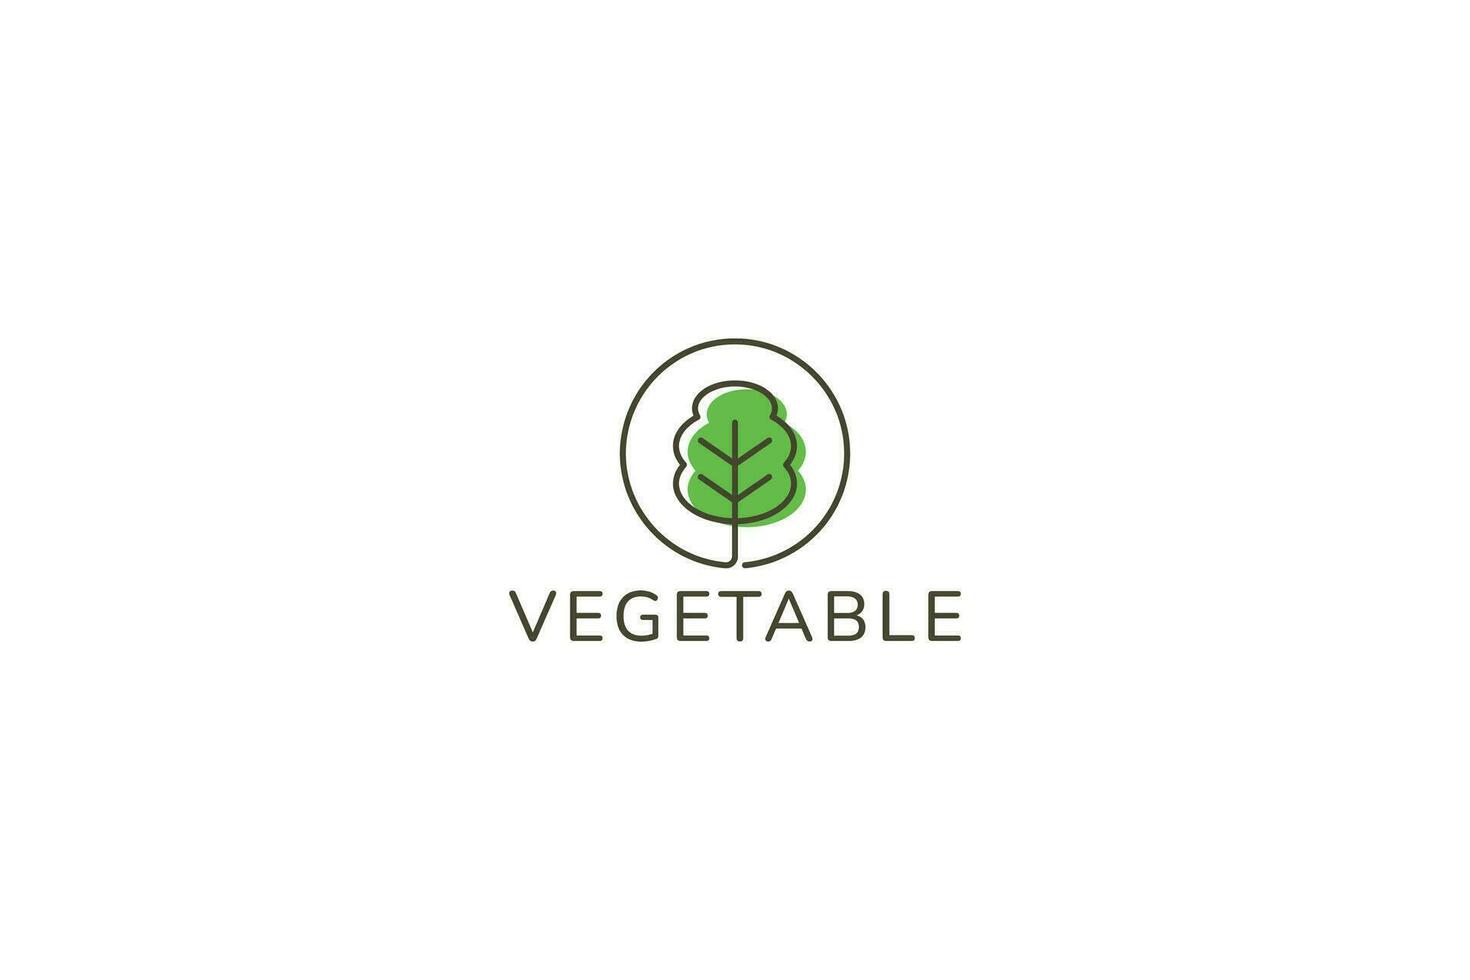 vegetal etiqueta sencillo concepto logo modelo negocio restaurante agricultura jardín comida vegano vector